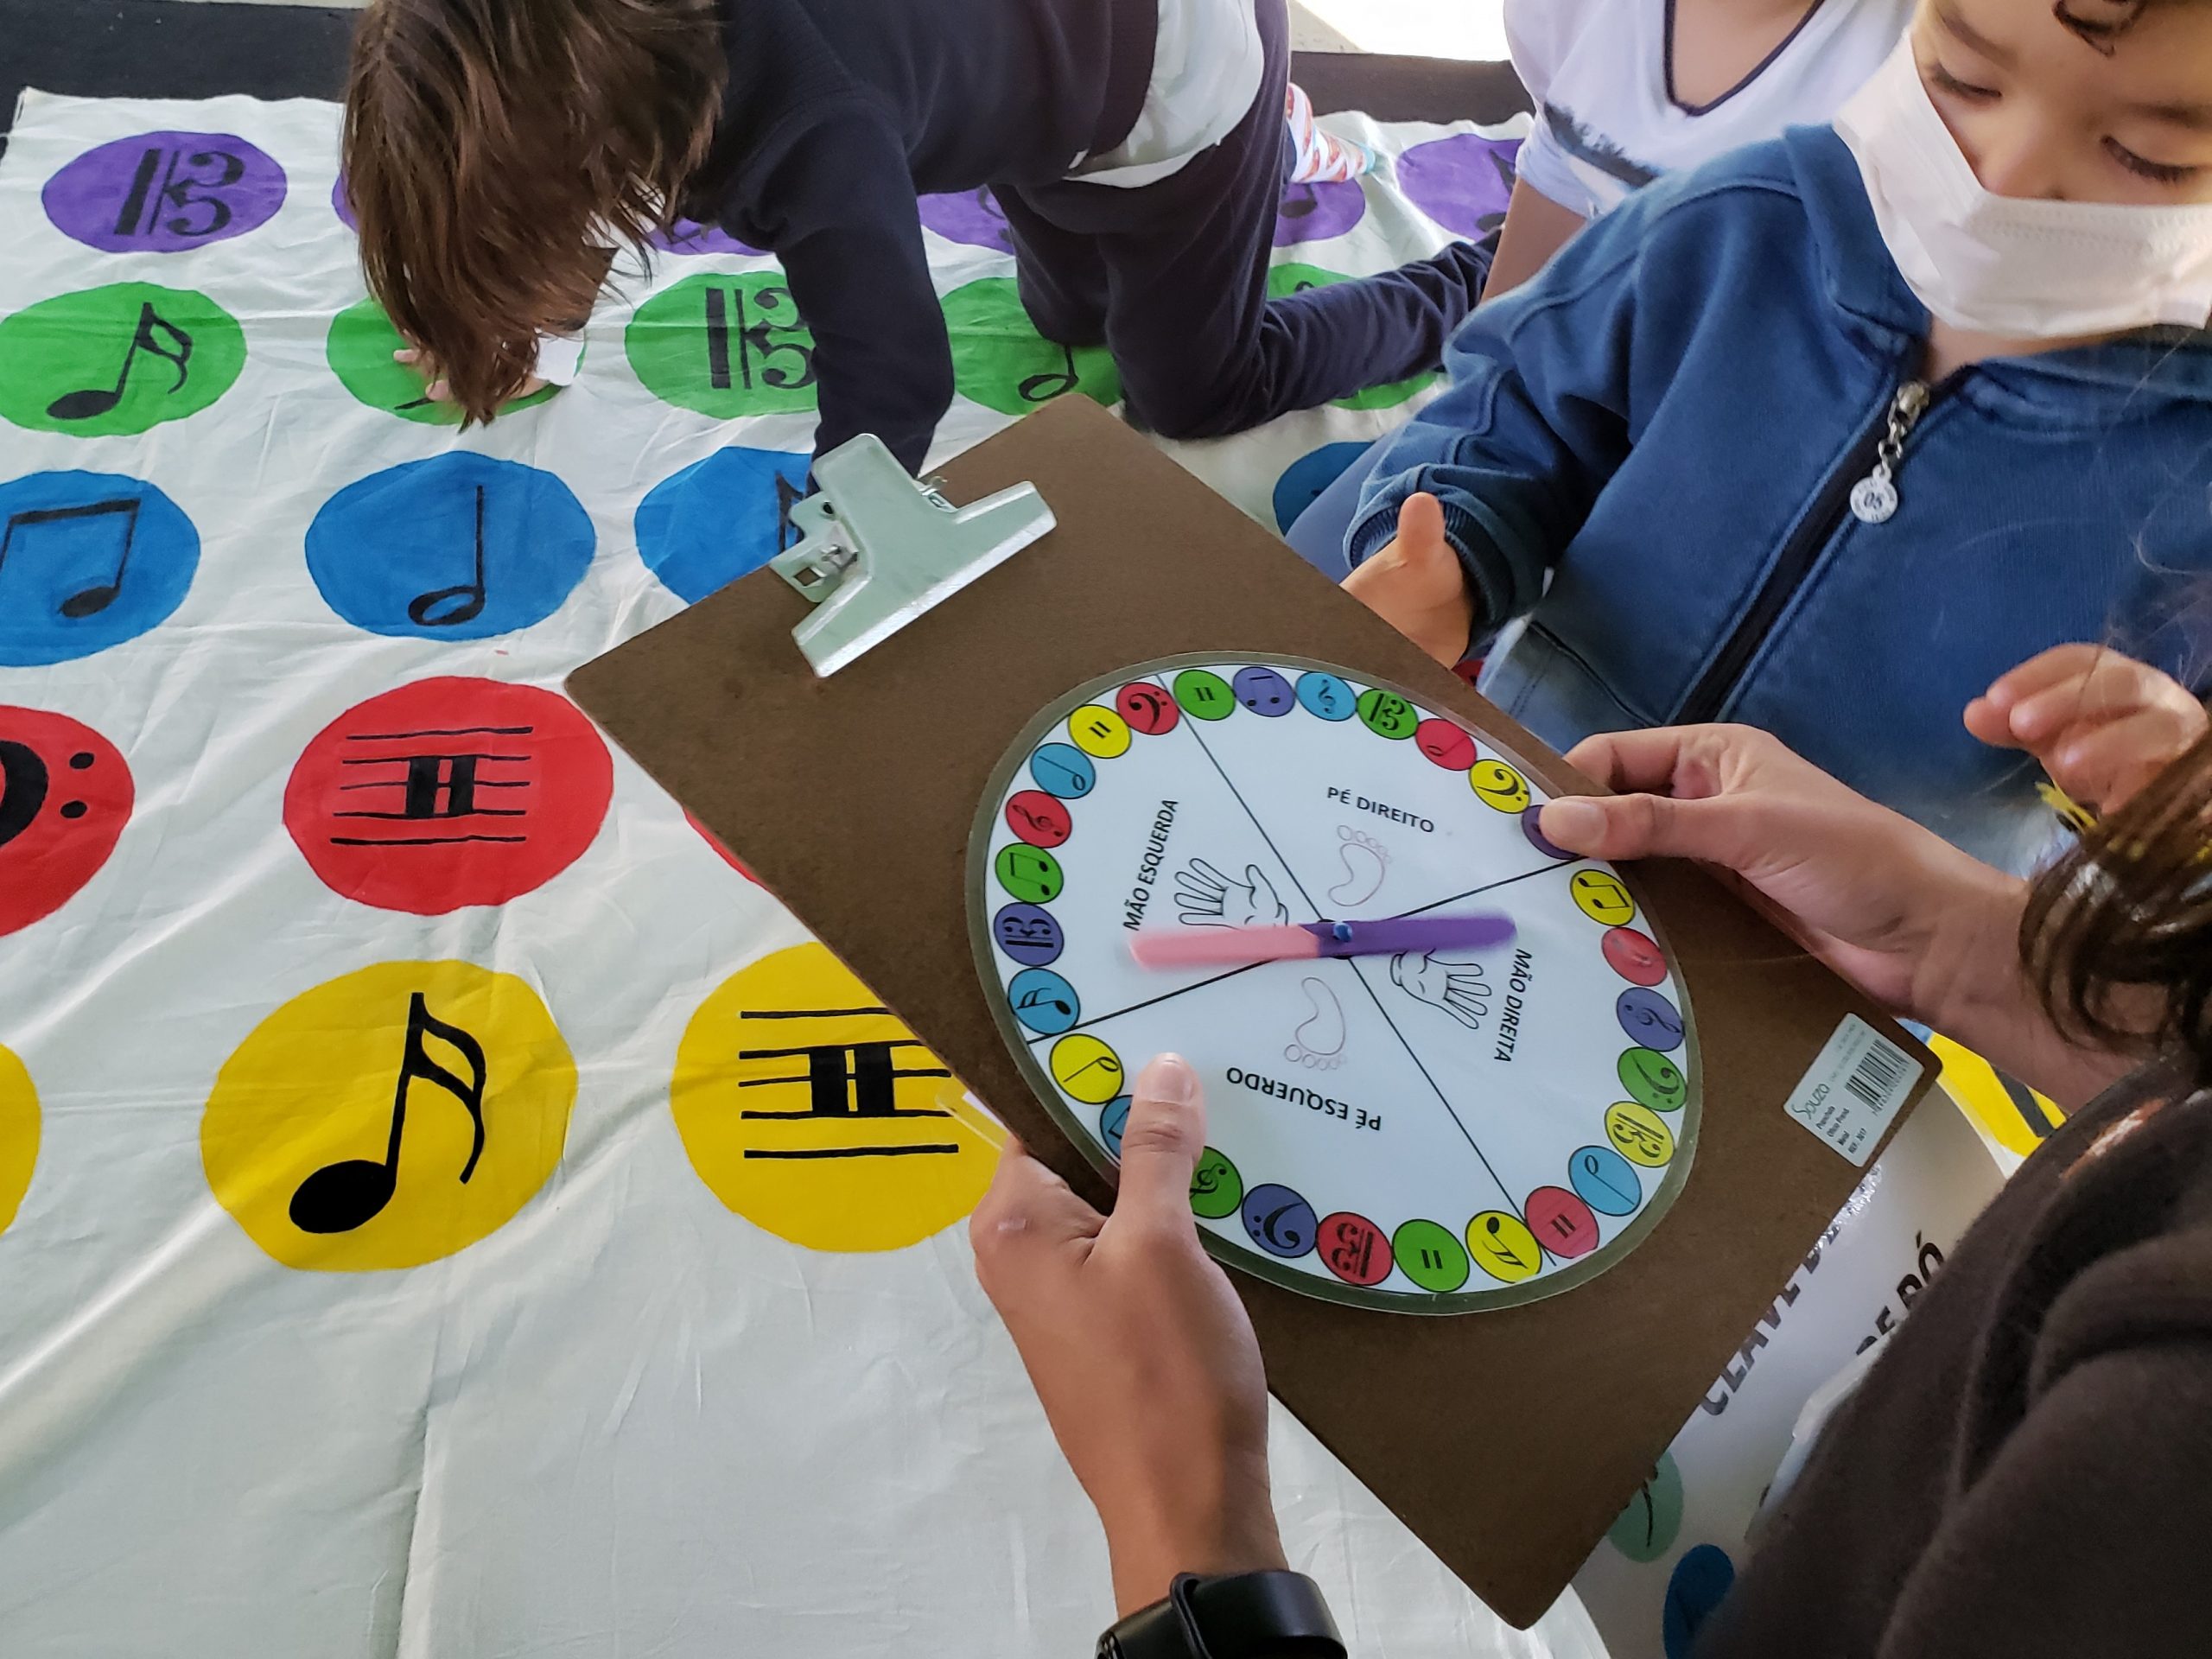 Na imagem há uma mão segurando uma prancheta com um disco giratório do jogo Twister Musical. No fundo da imagem há uma tapete do jogo com notas musicais nas cores roxa, verde, azul, vermelho e amarelo.